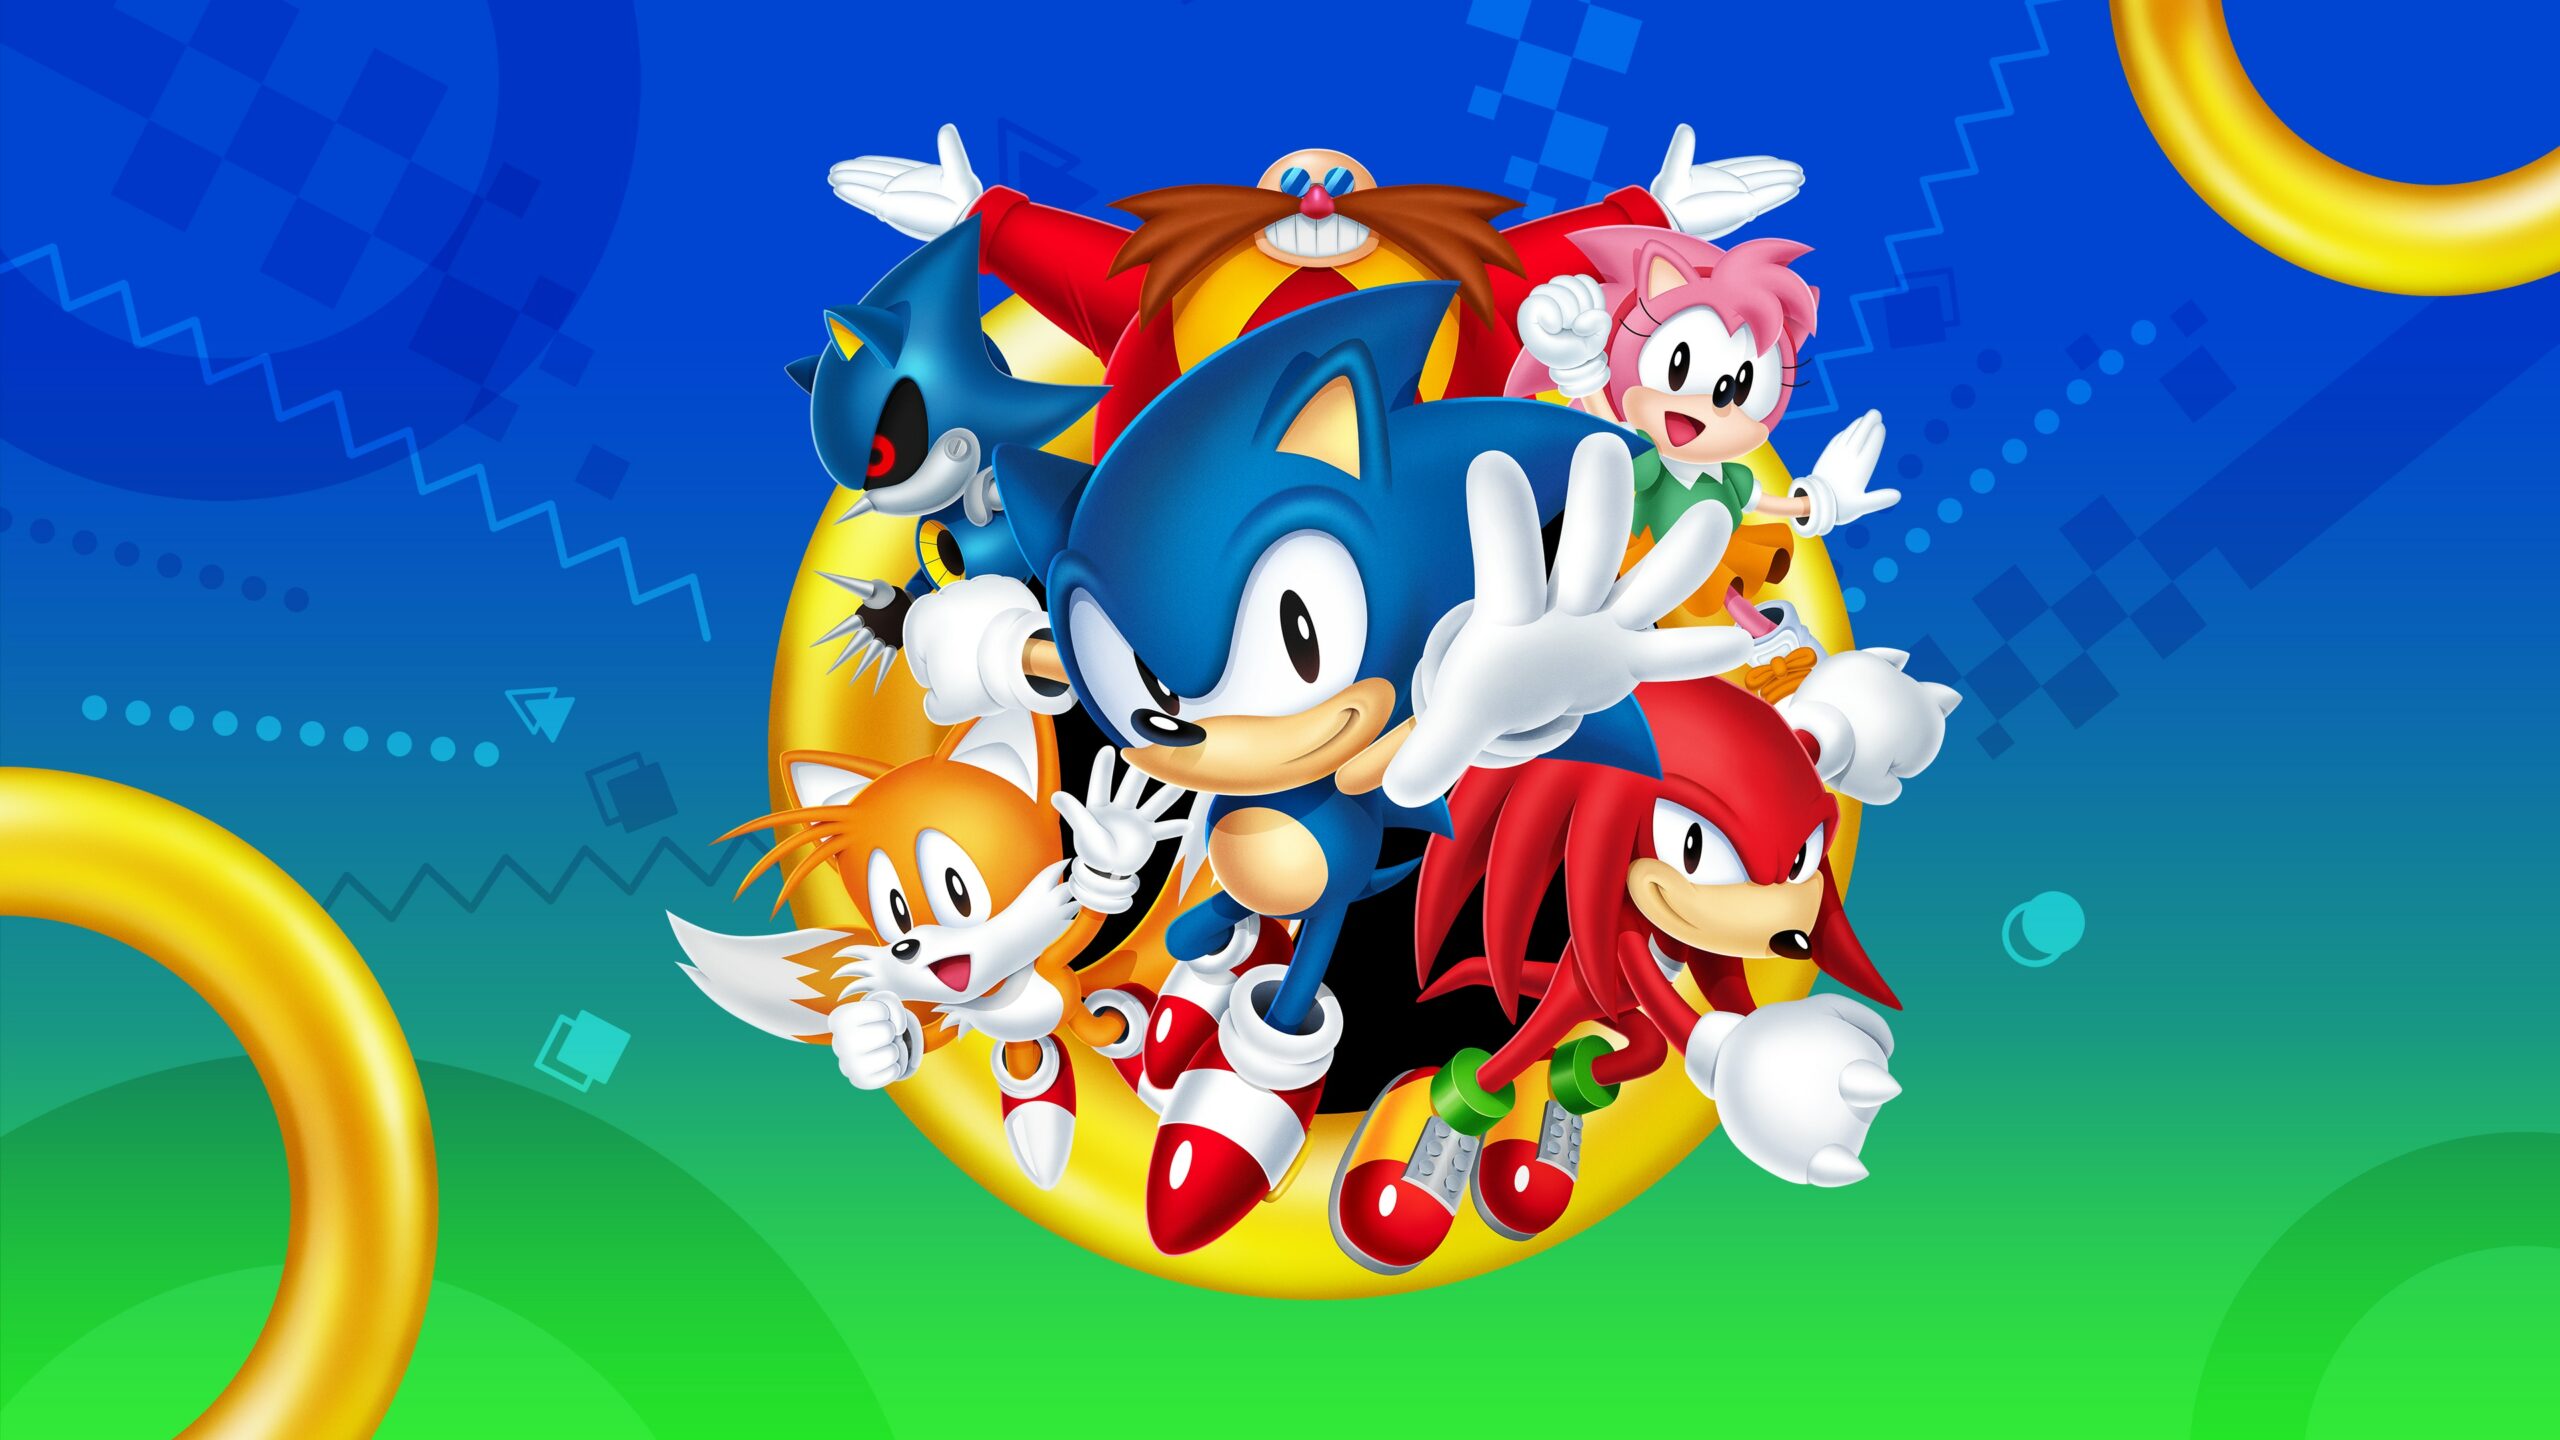 Download Sonic the Hedgehog: A Speedy Adventure in Fan Art Wallpaper